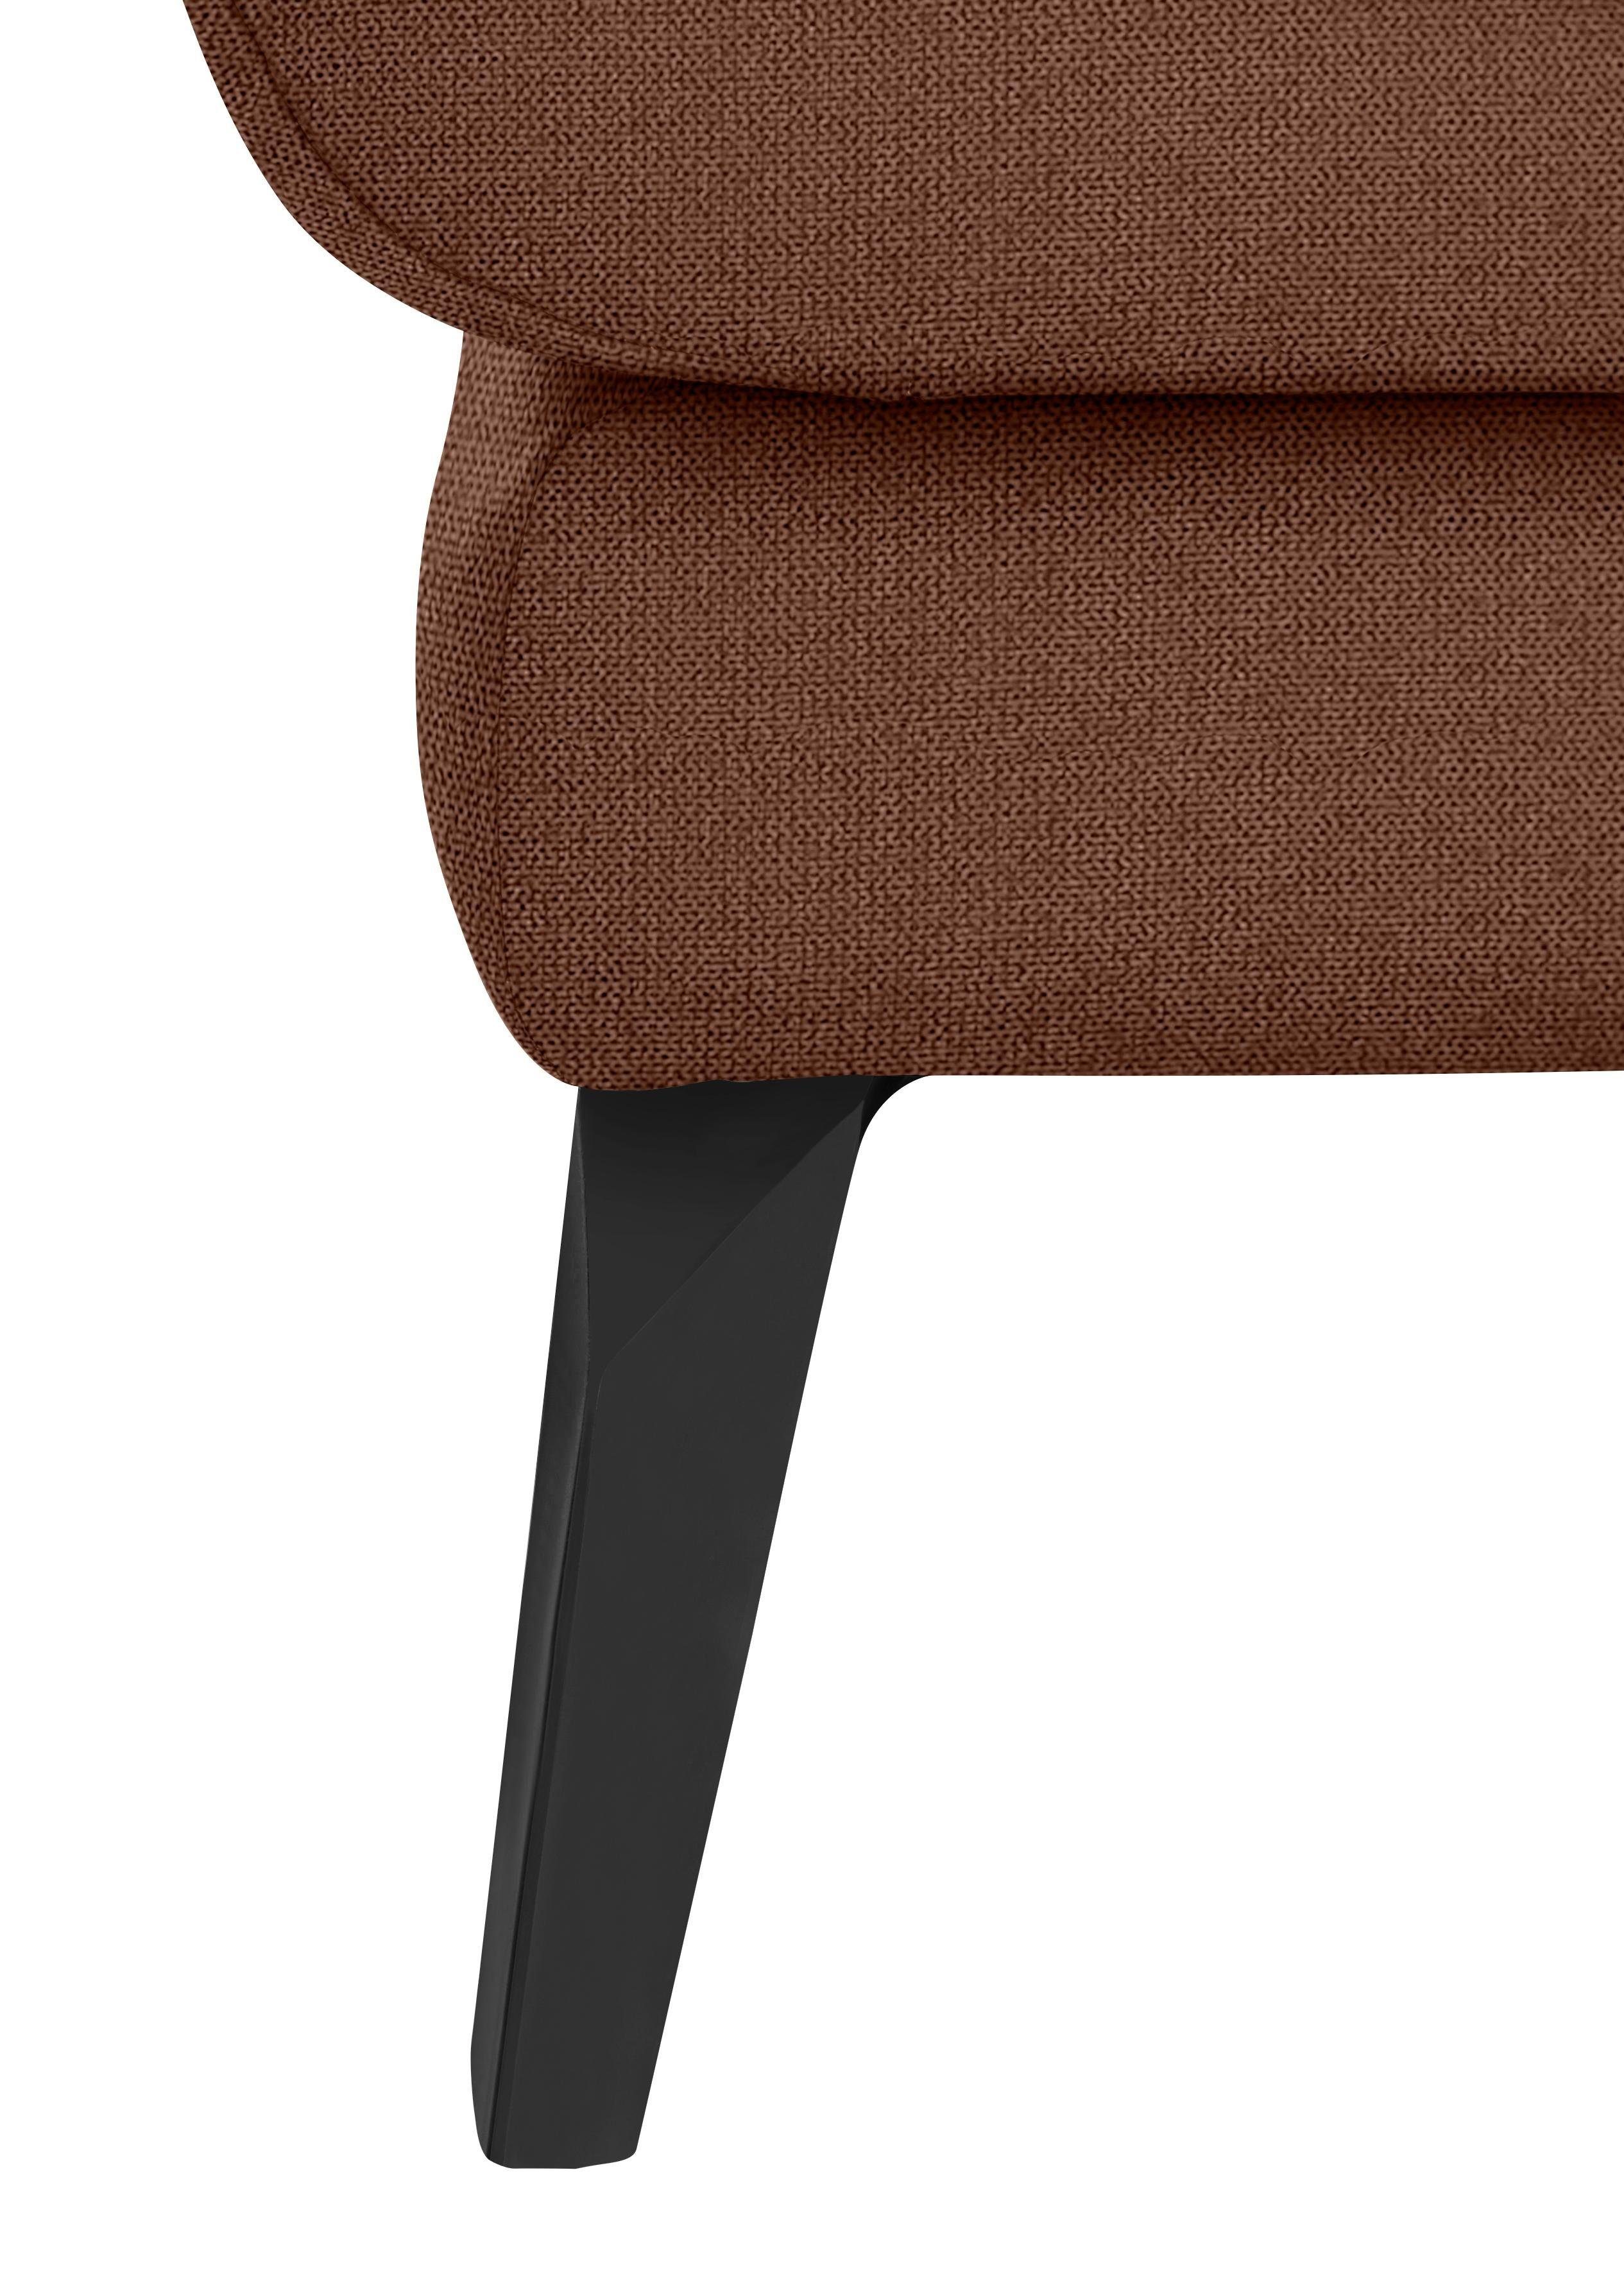 mit Heftung W.SCHILLIG Chaiselongue Füße Sitz, pulverbeschichtet dekorativer softy, im schwarz